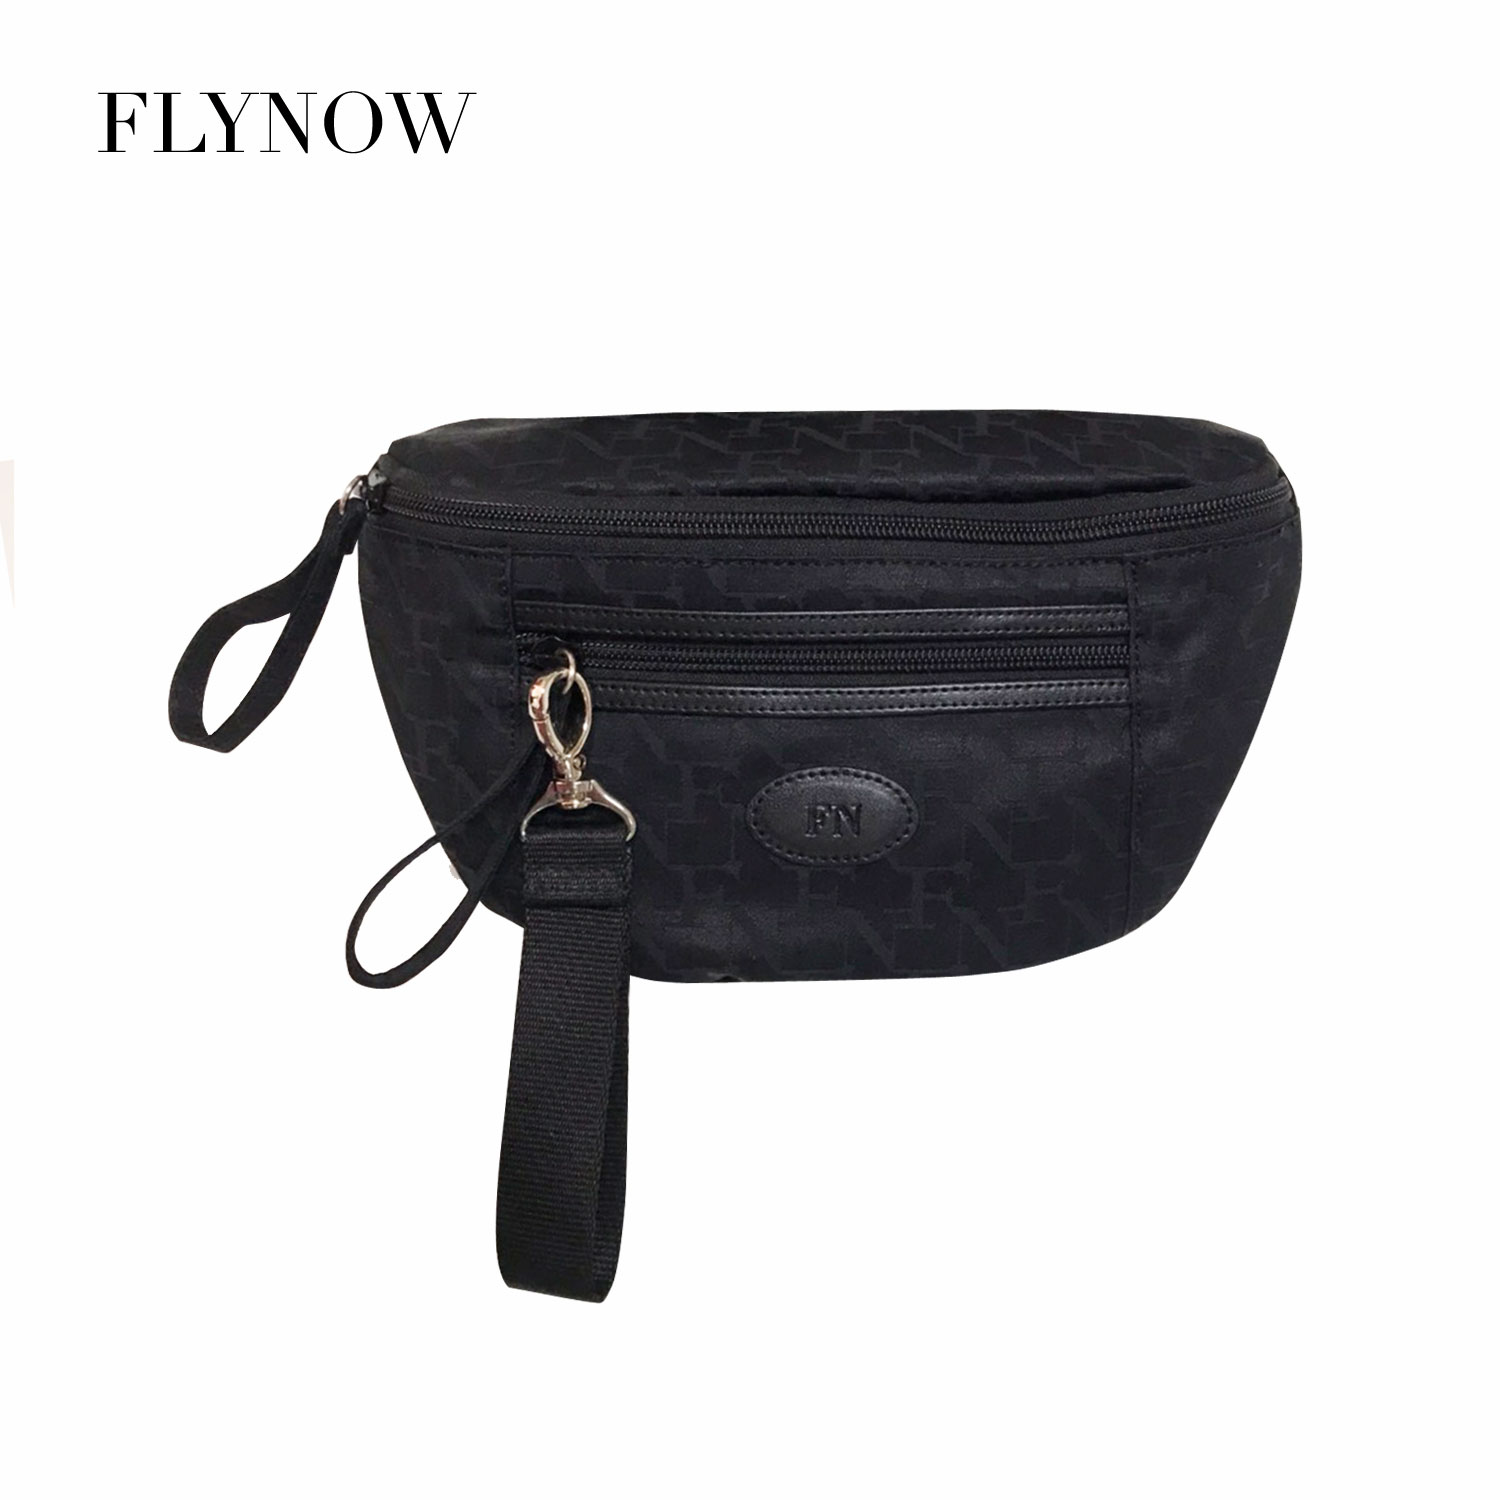 FN BAG : FLYNOW กระเป๋าคาดอก คาดเอว 1208-21198